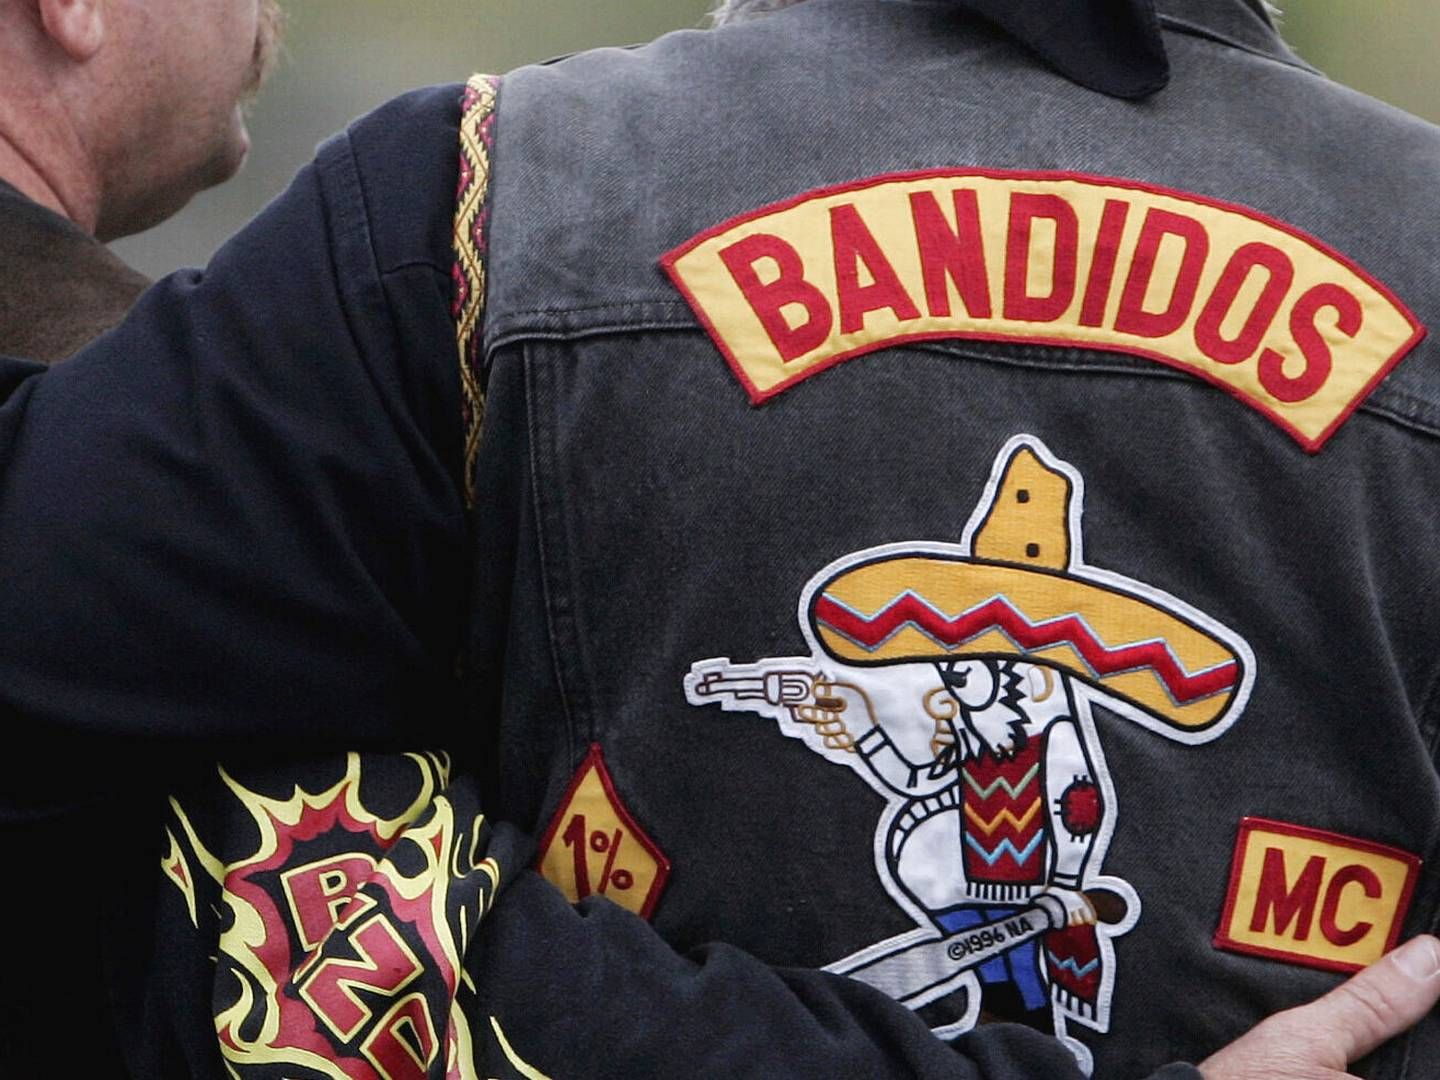 Blandt de anholdte er der personer med relation til Bandidos, oplyser Østjyllands Politi, der er i gang med at afklare sagens nærmere forbindelse til rockerklubben. | Foto: Roberto Pfeil/AP/Ritzau Scanpix